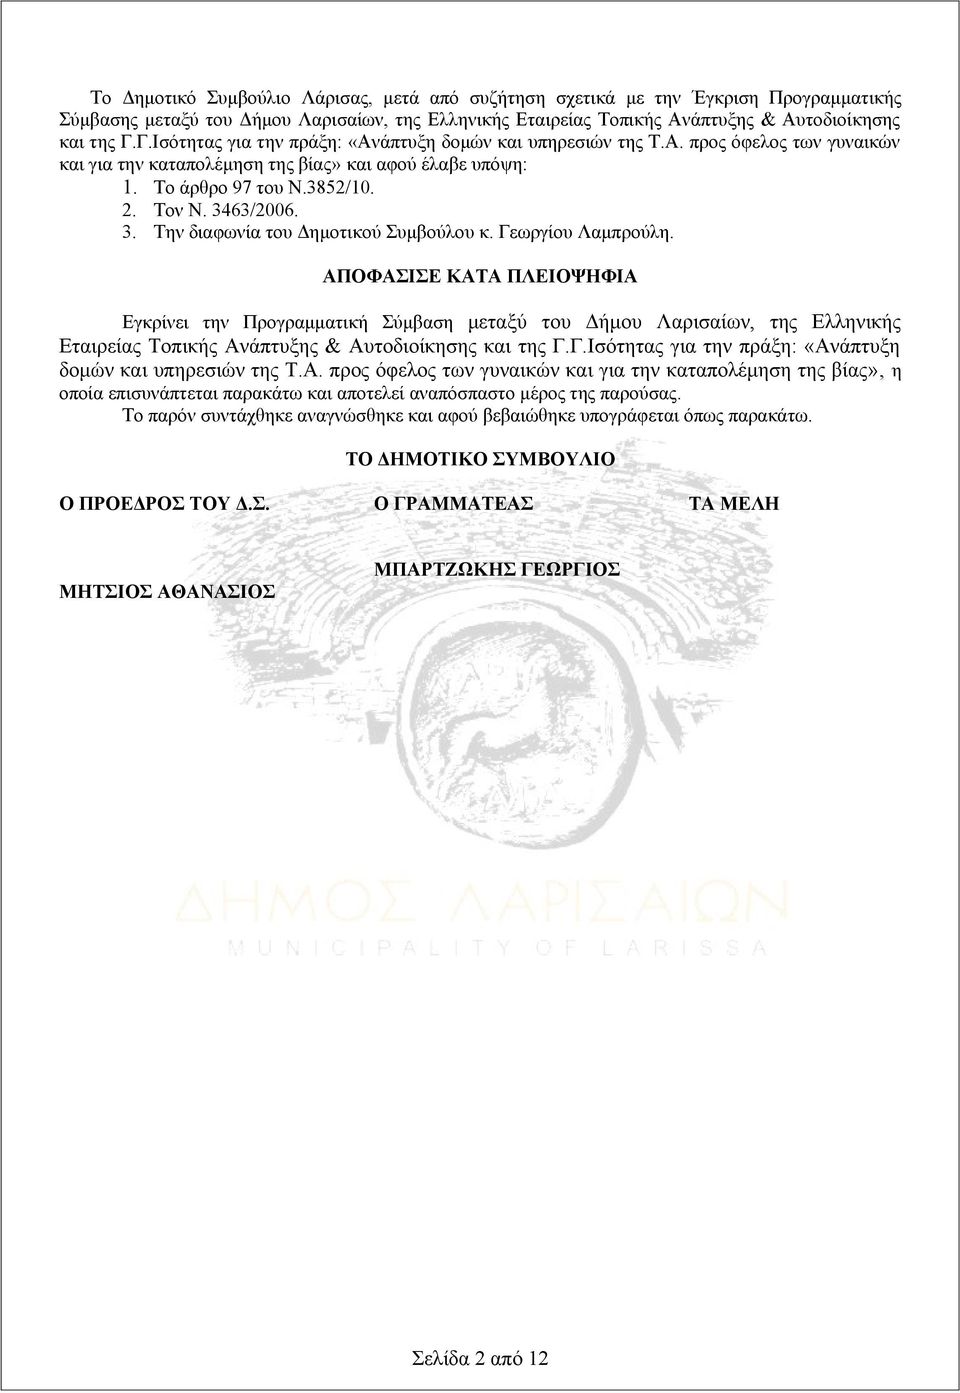 63/2006. 3. Την διαφωνία του Δημοτικού Συμβούλου κ. Γεωργίου Λαμπρούλη.